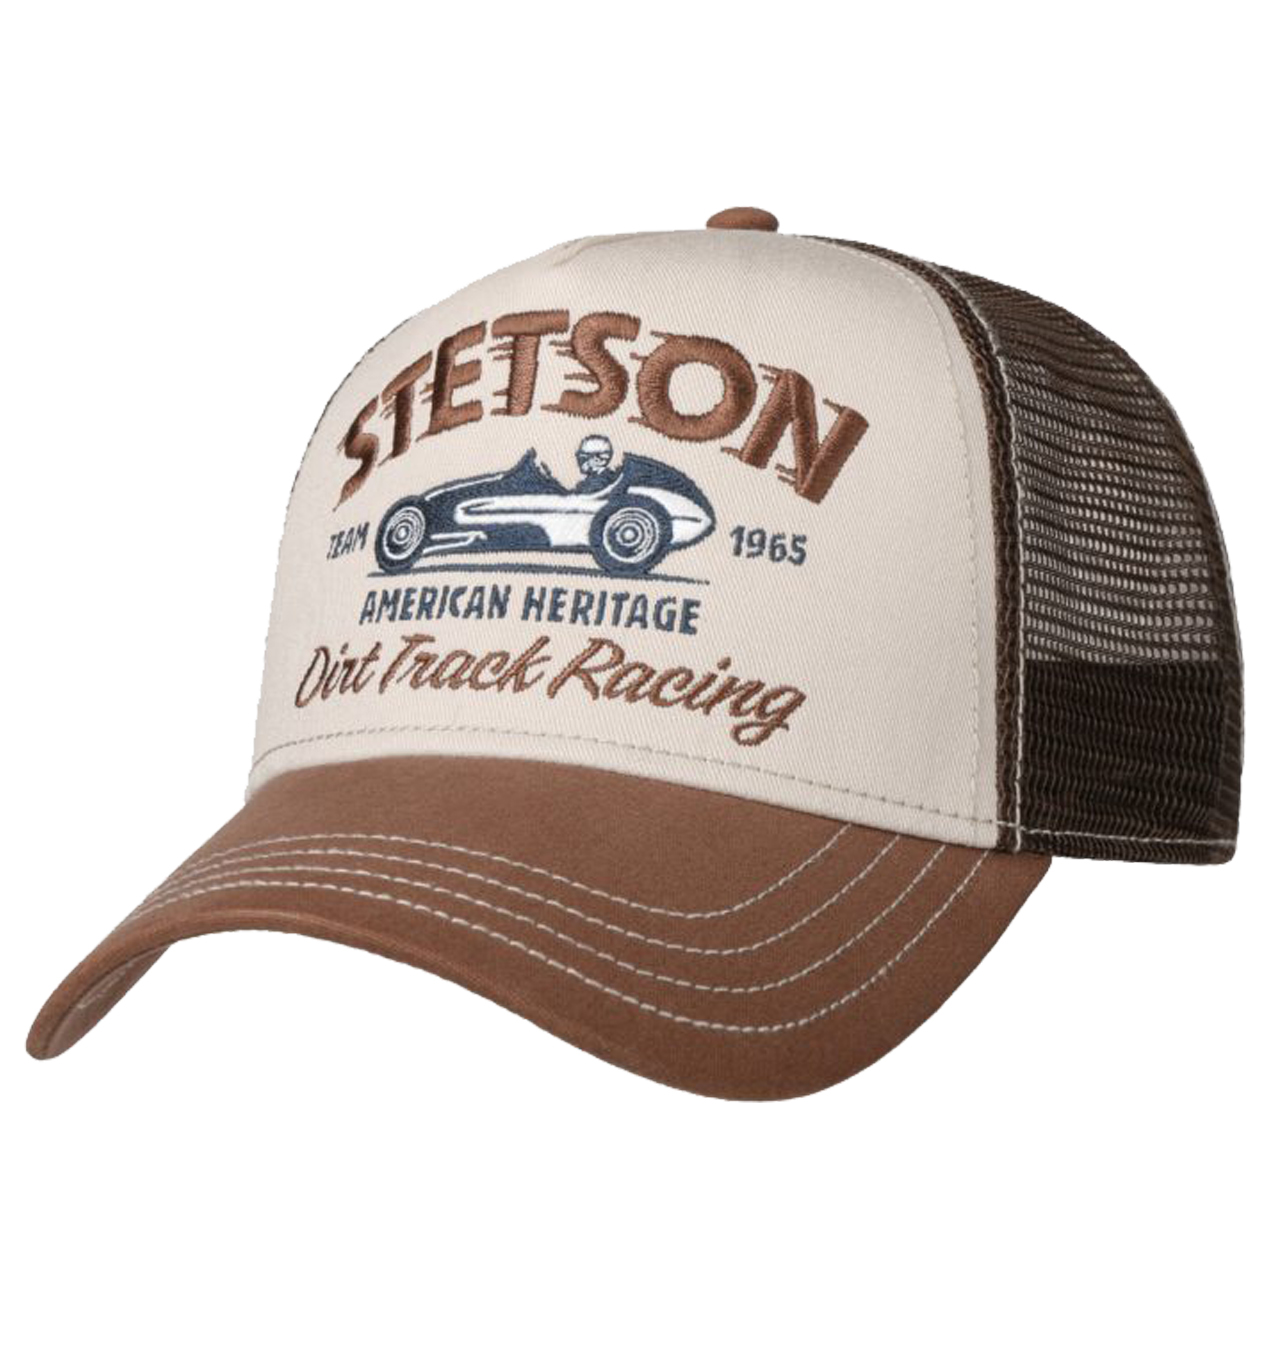 Stetson - Dirt Track Racing Trucker Cap - Brown